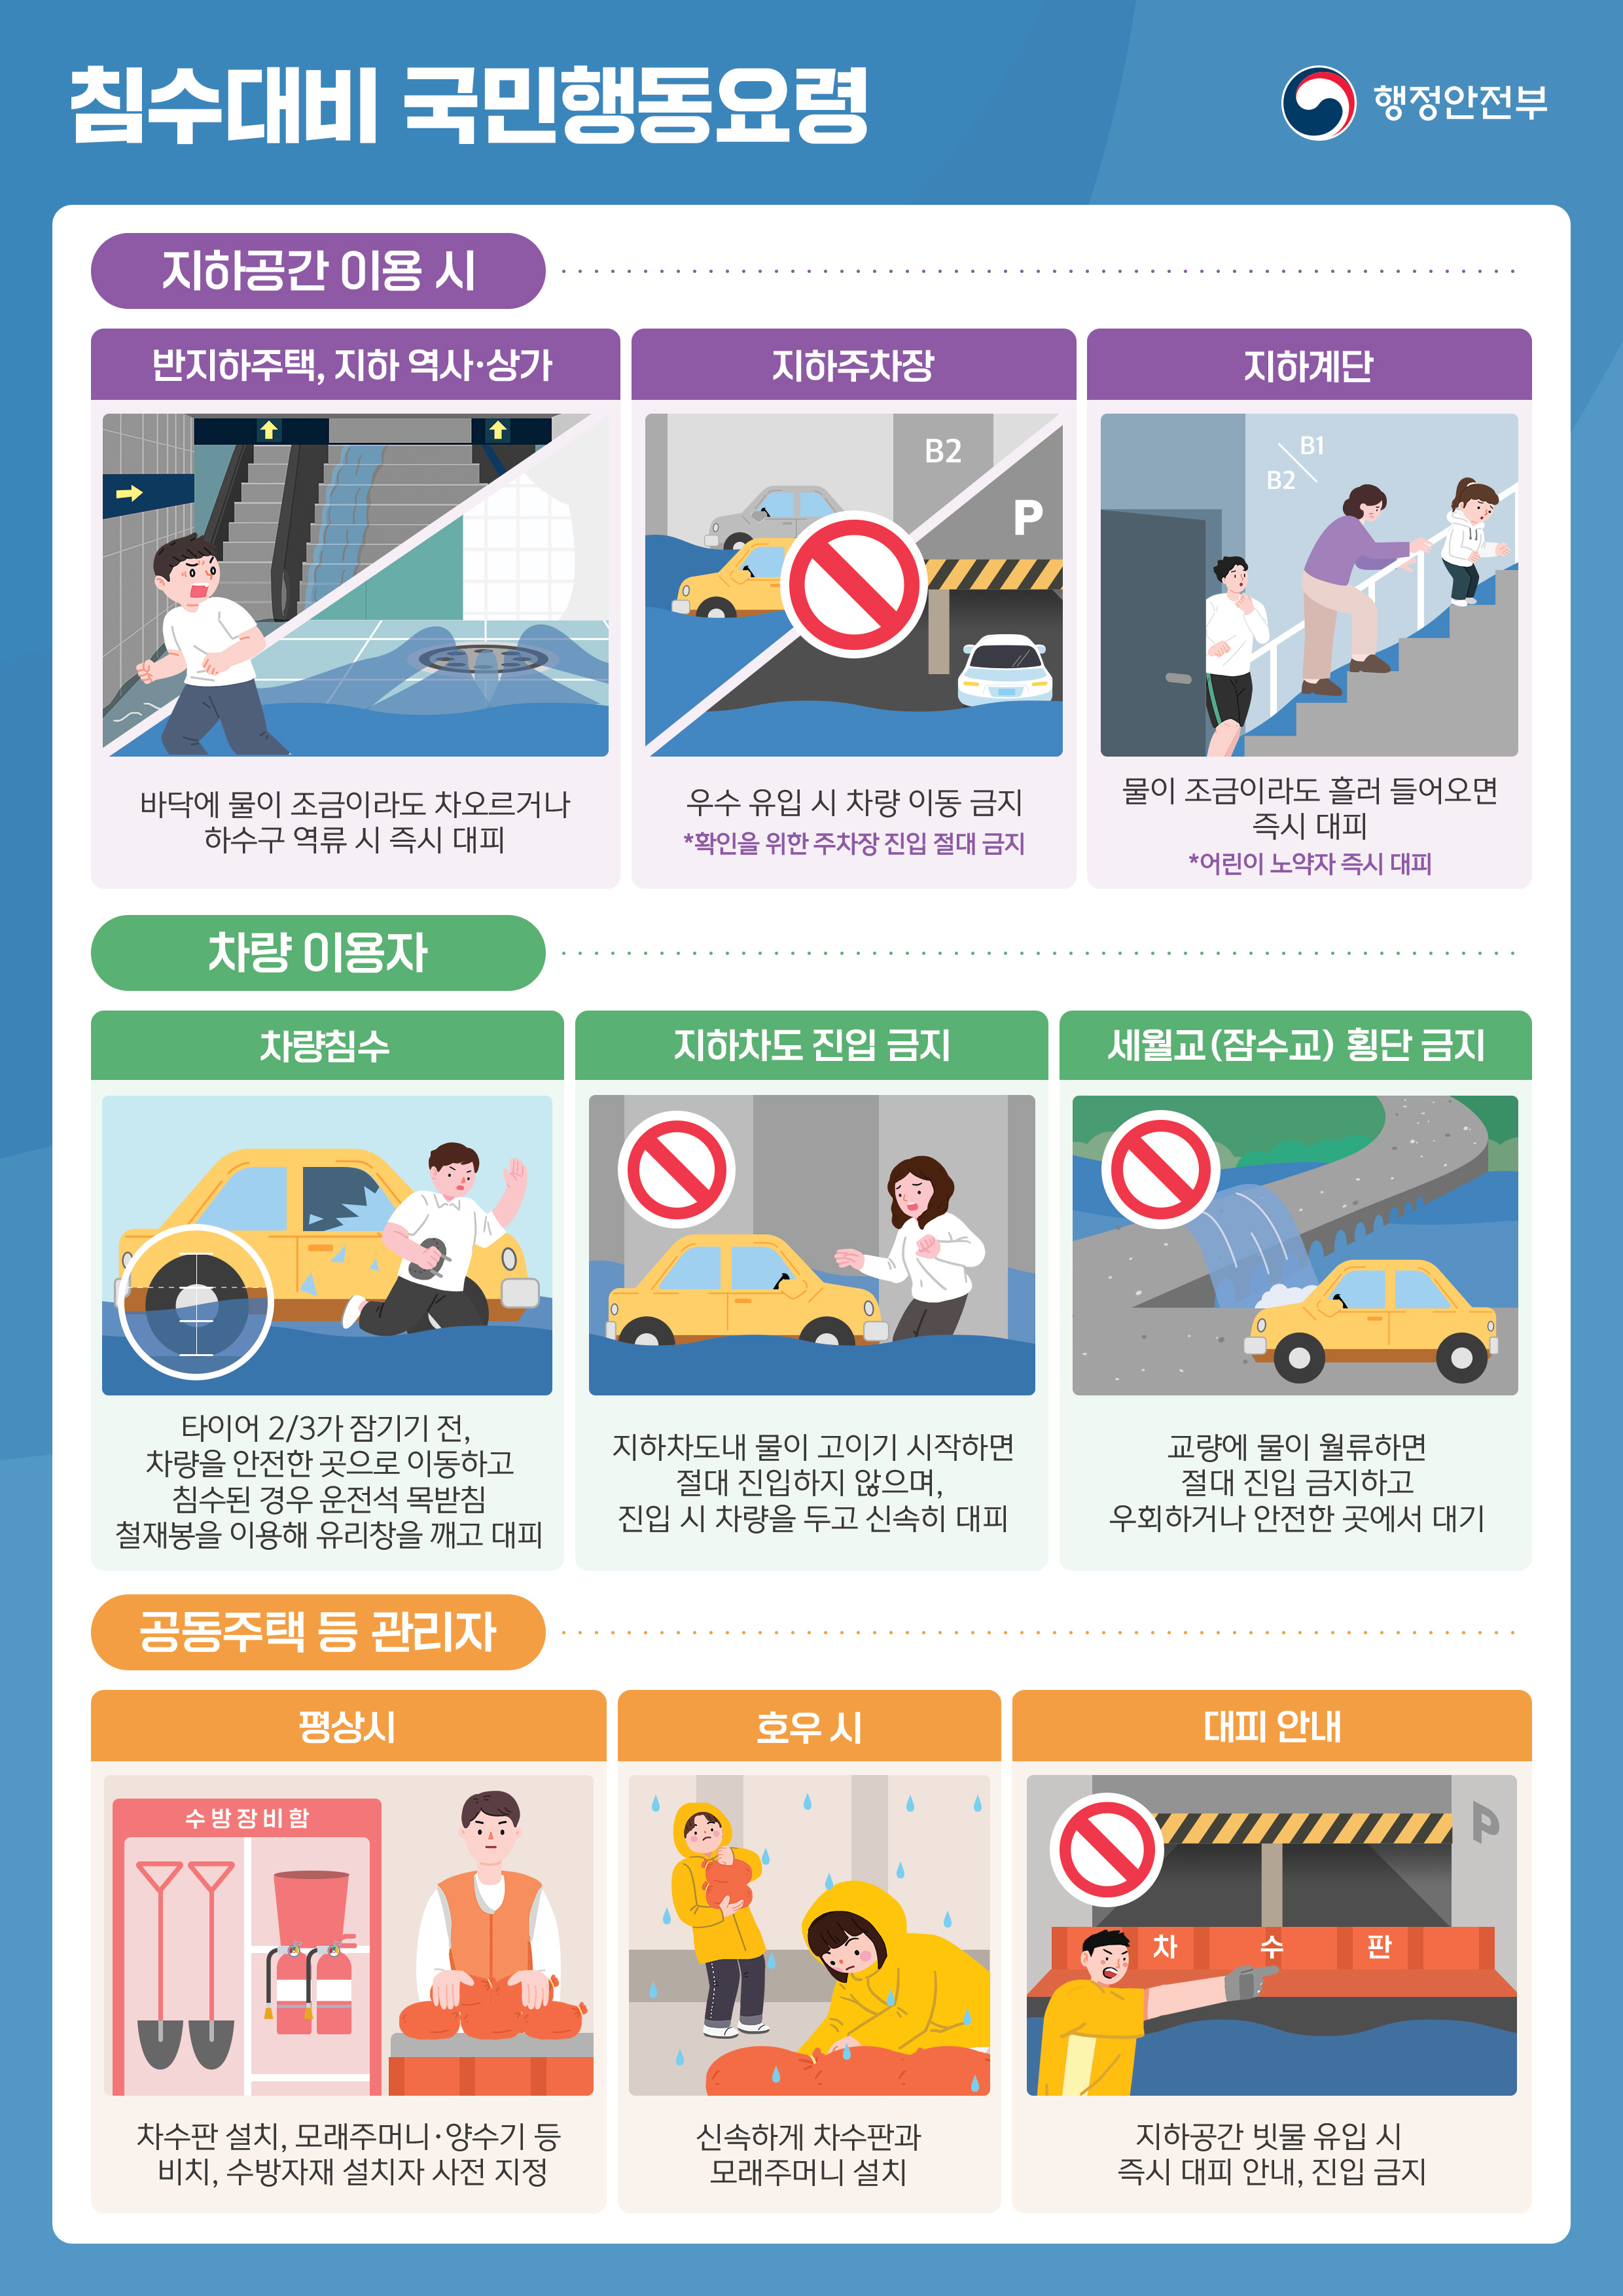 여름철 자연재난 국민행동요령 홍보 이미지2